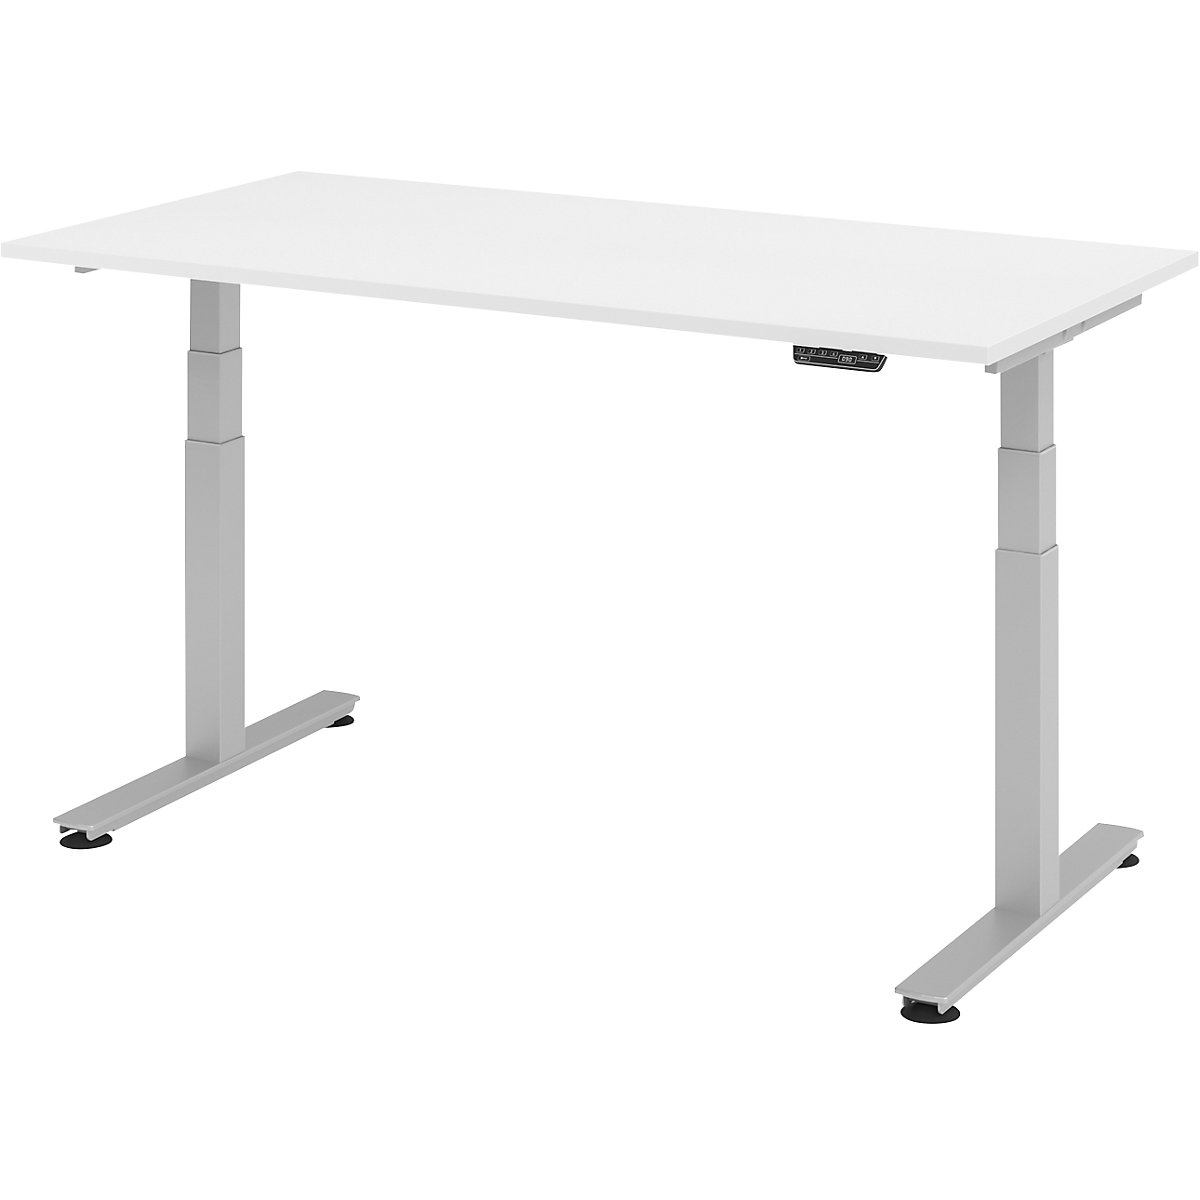 Sta-bureautafel, elektrisch in hoogte verstelbaar UPLINER-2.0, recht, b x d = 1600 x 800 mm, wit-20